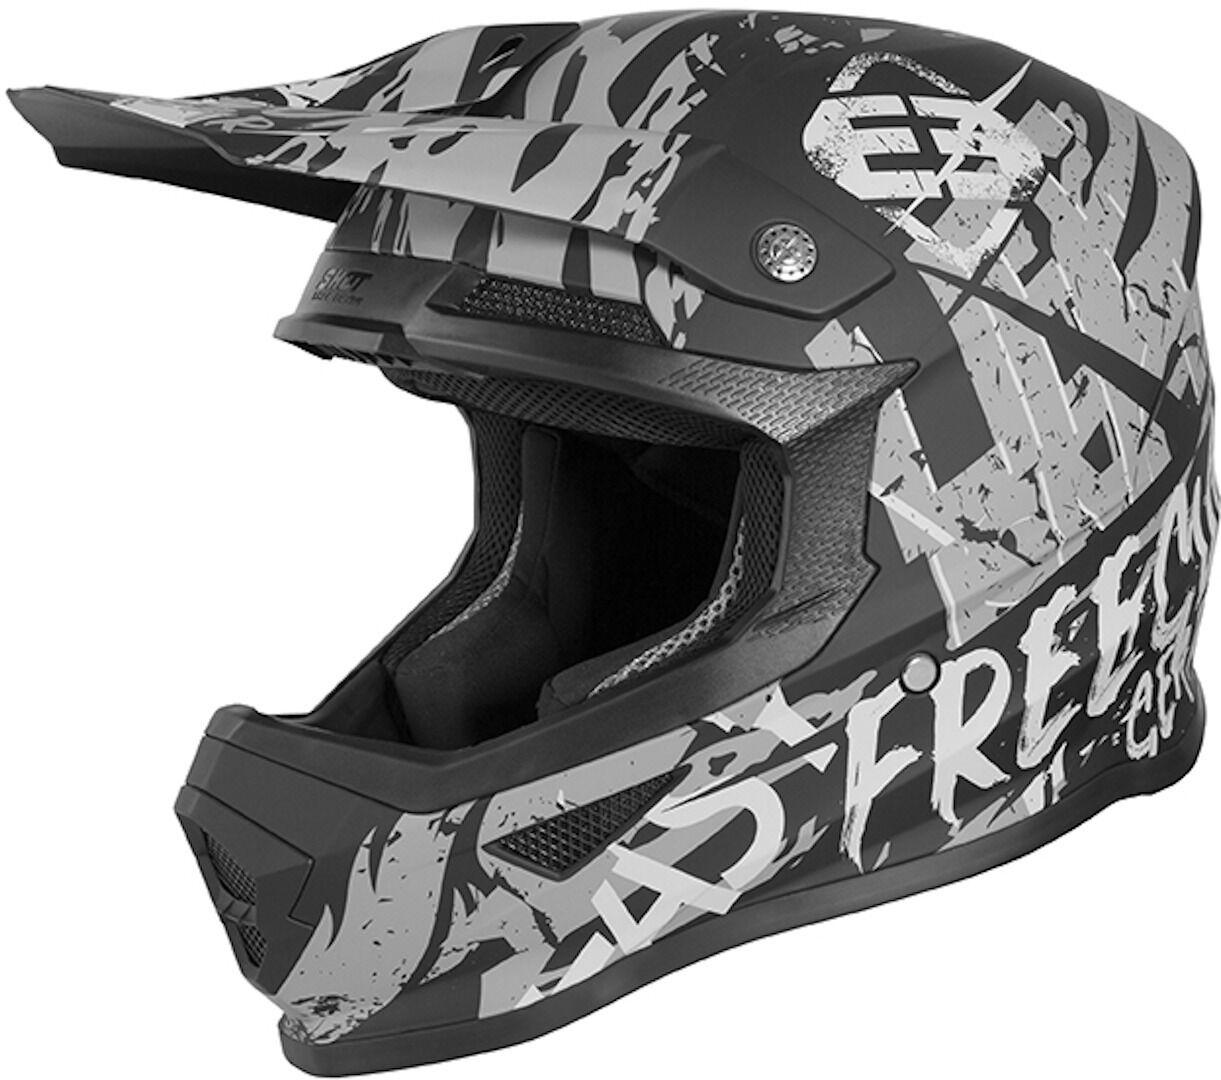 Freegun XP4 Maniac Casco de Motocross - Negro Gris (XL)